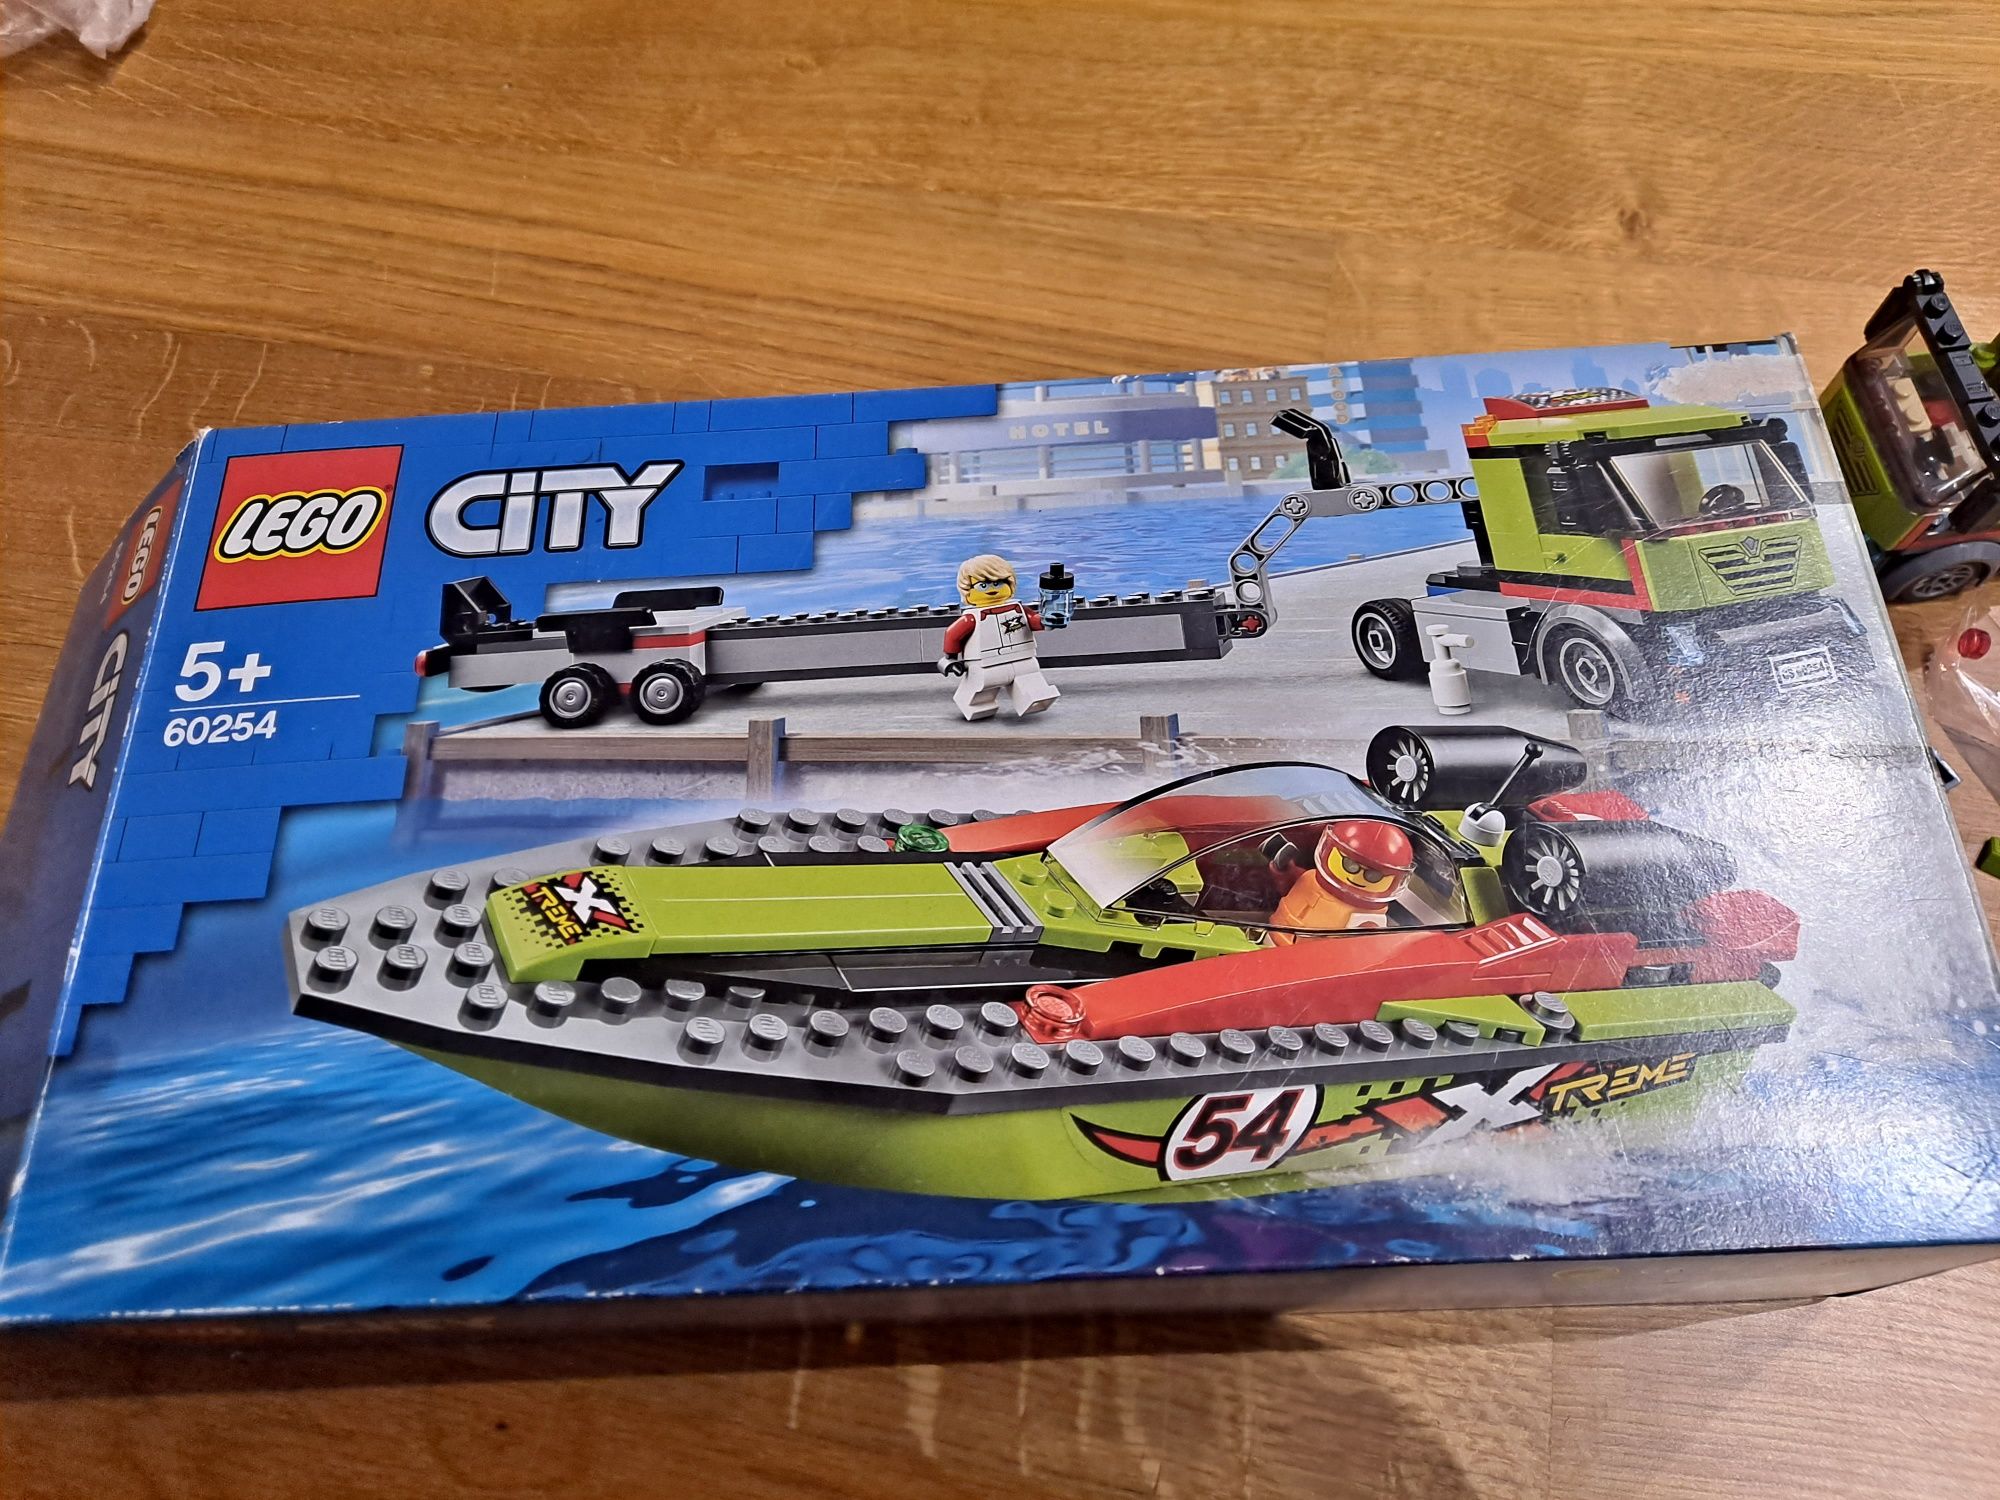 Lego city 60254 5+